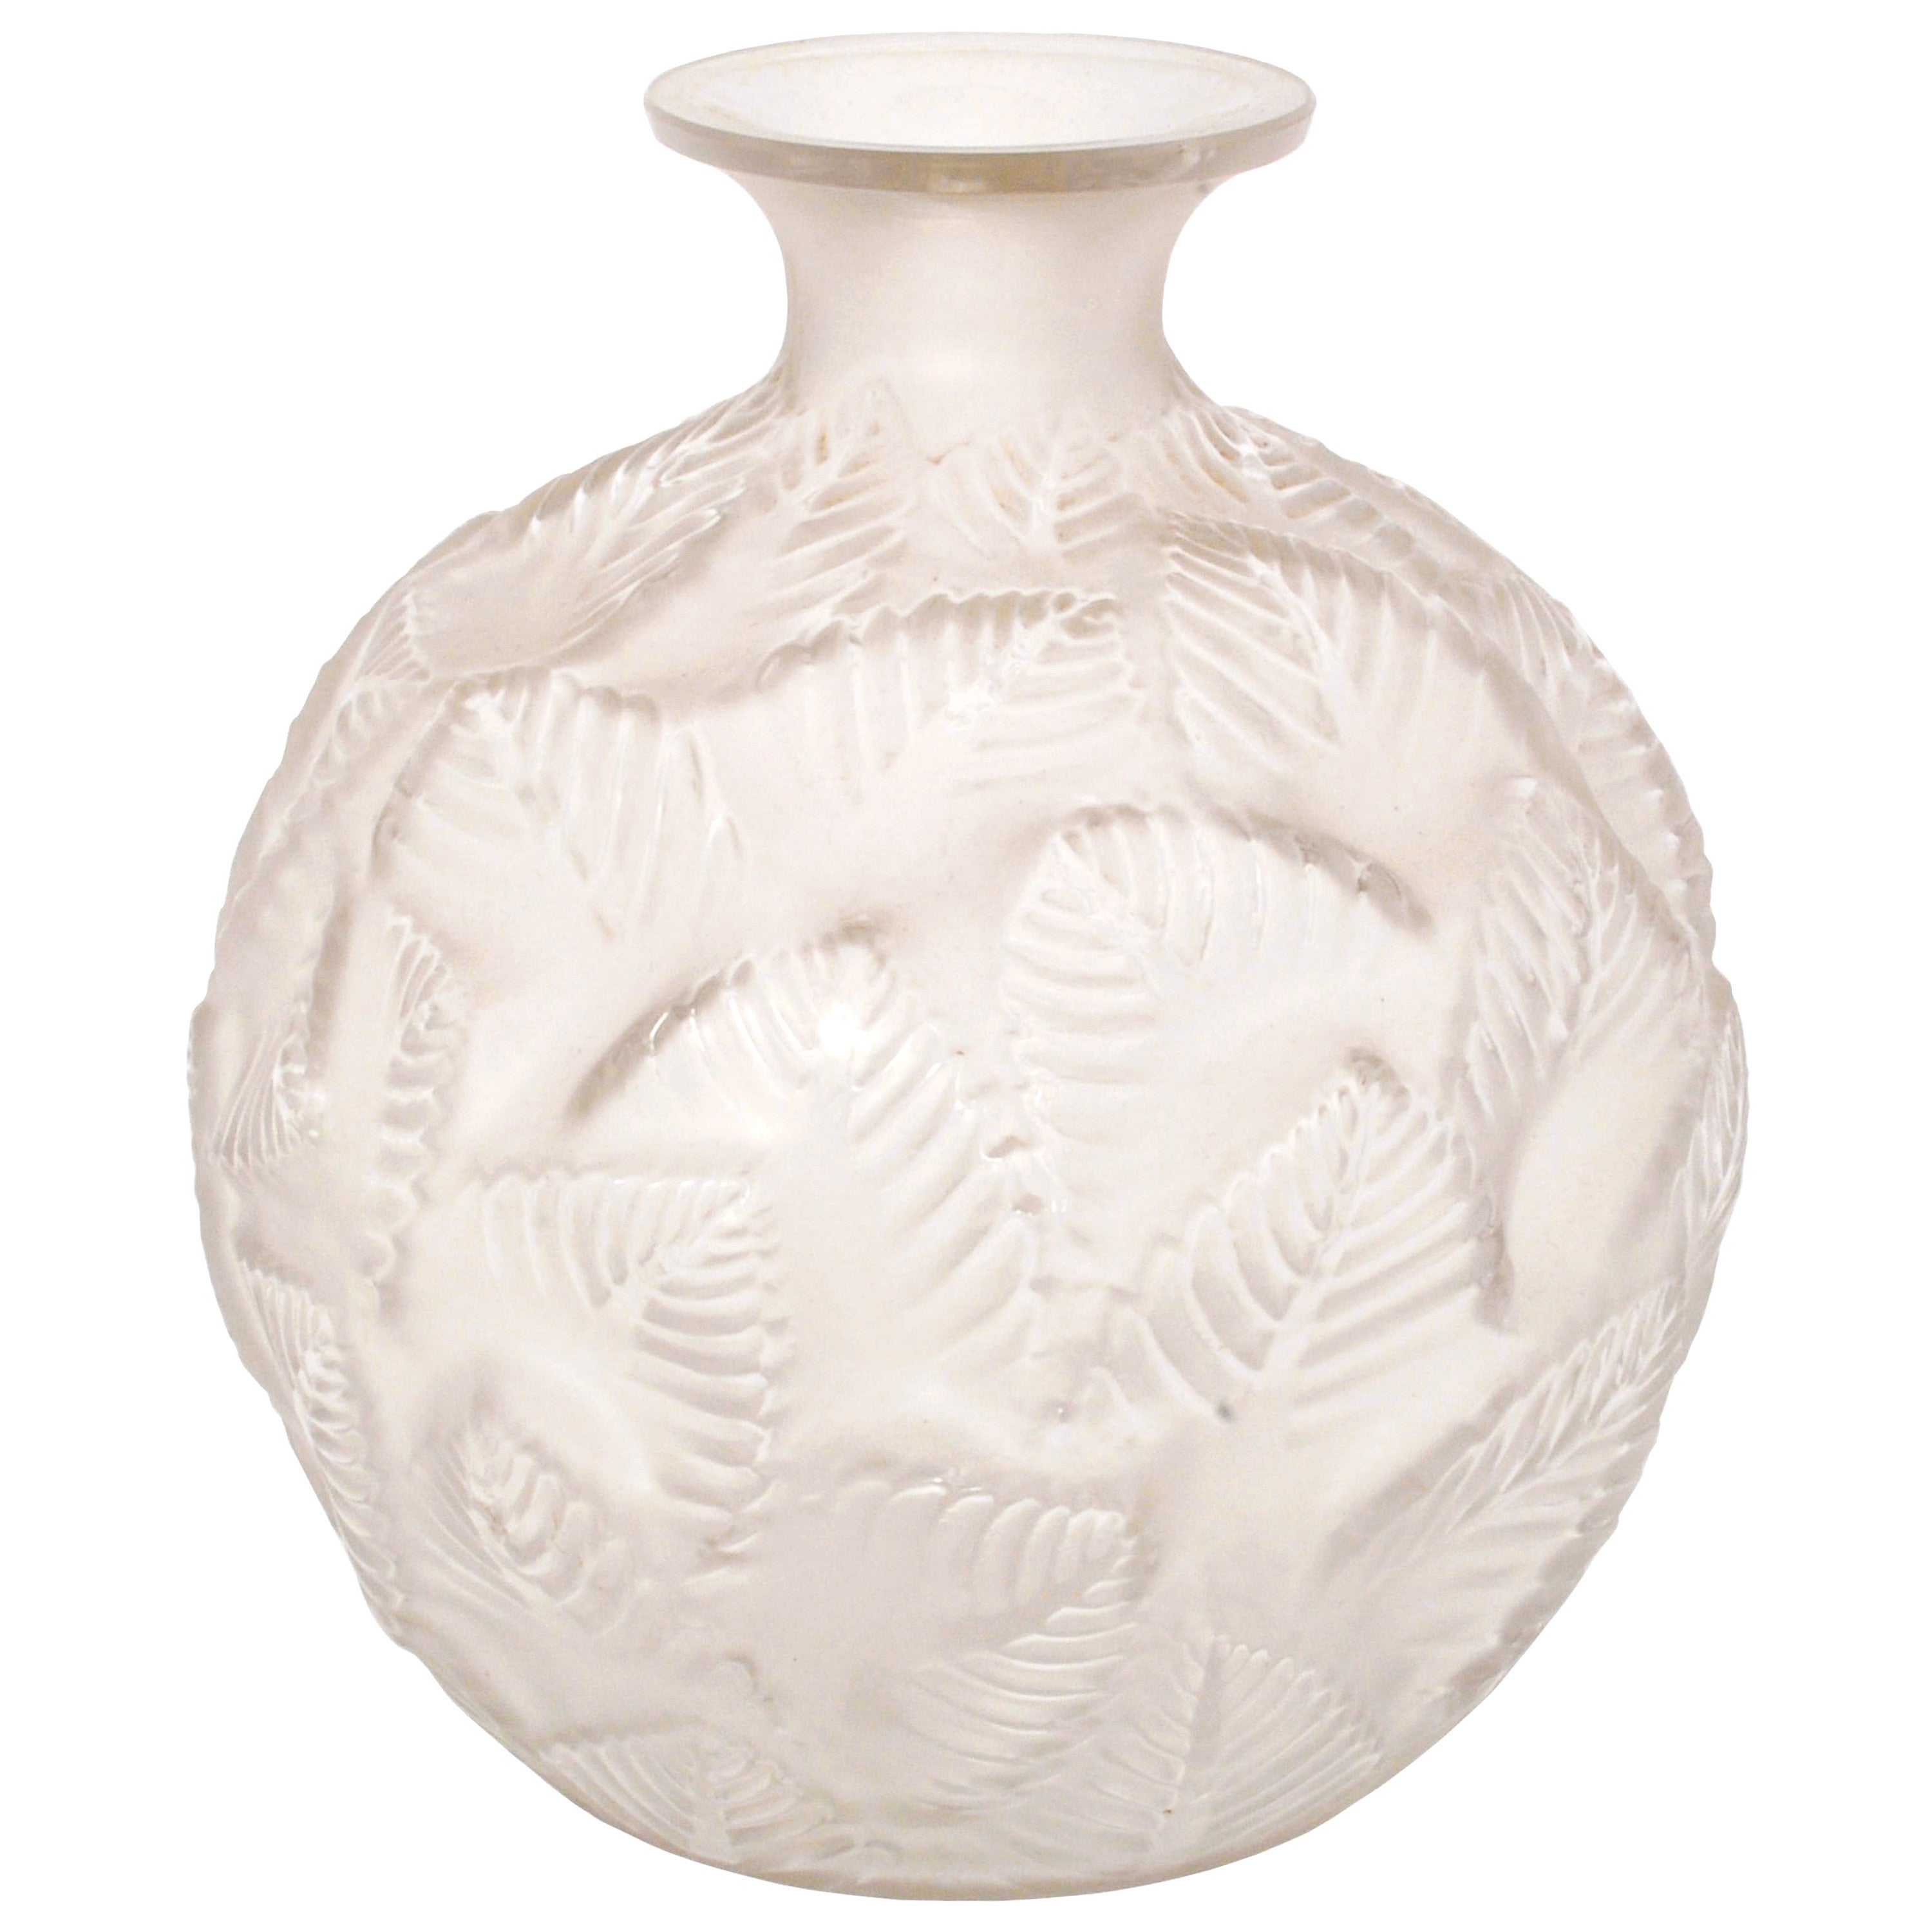 Antique French Art Deco Rene Lalique Clear Opalescent "Ormeaux" Glass Vase 1926